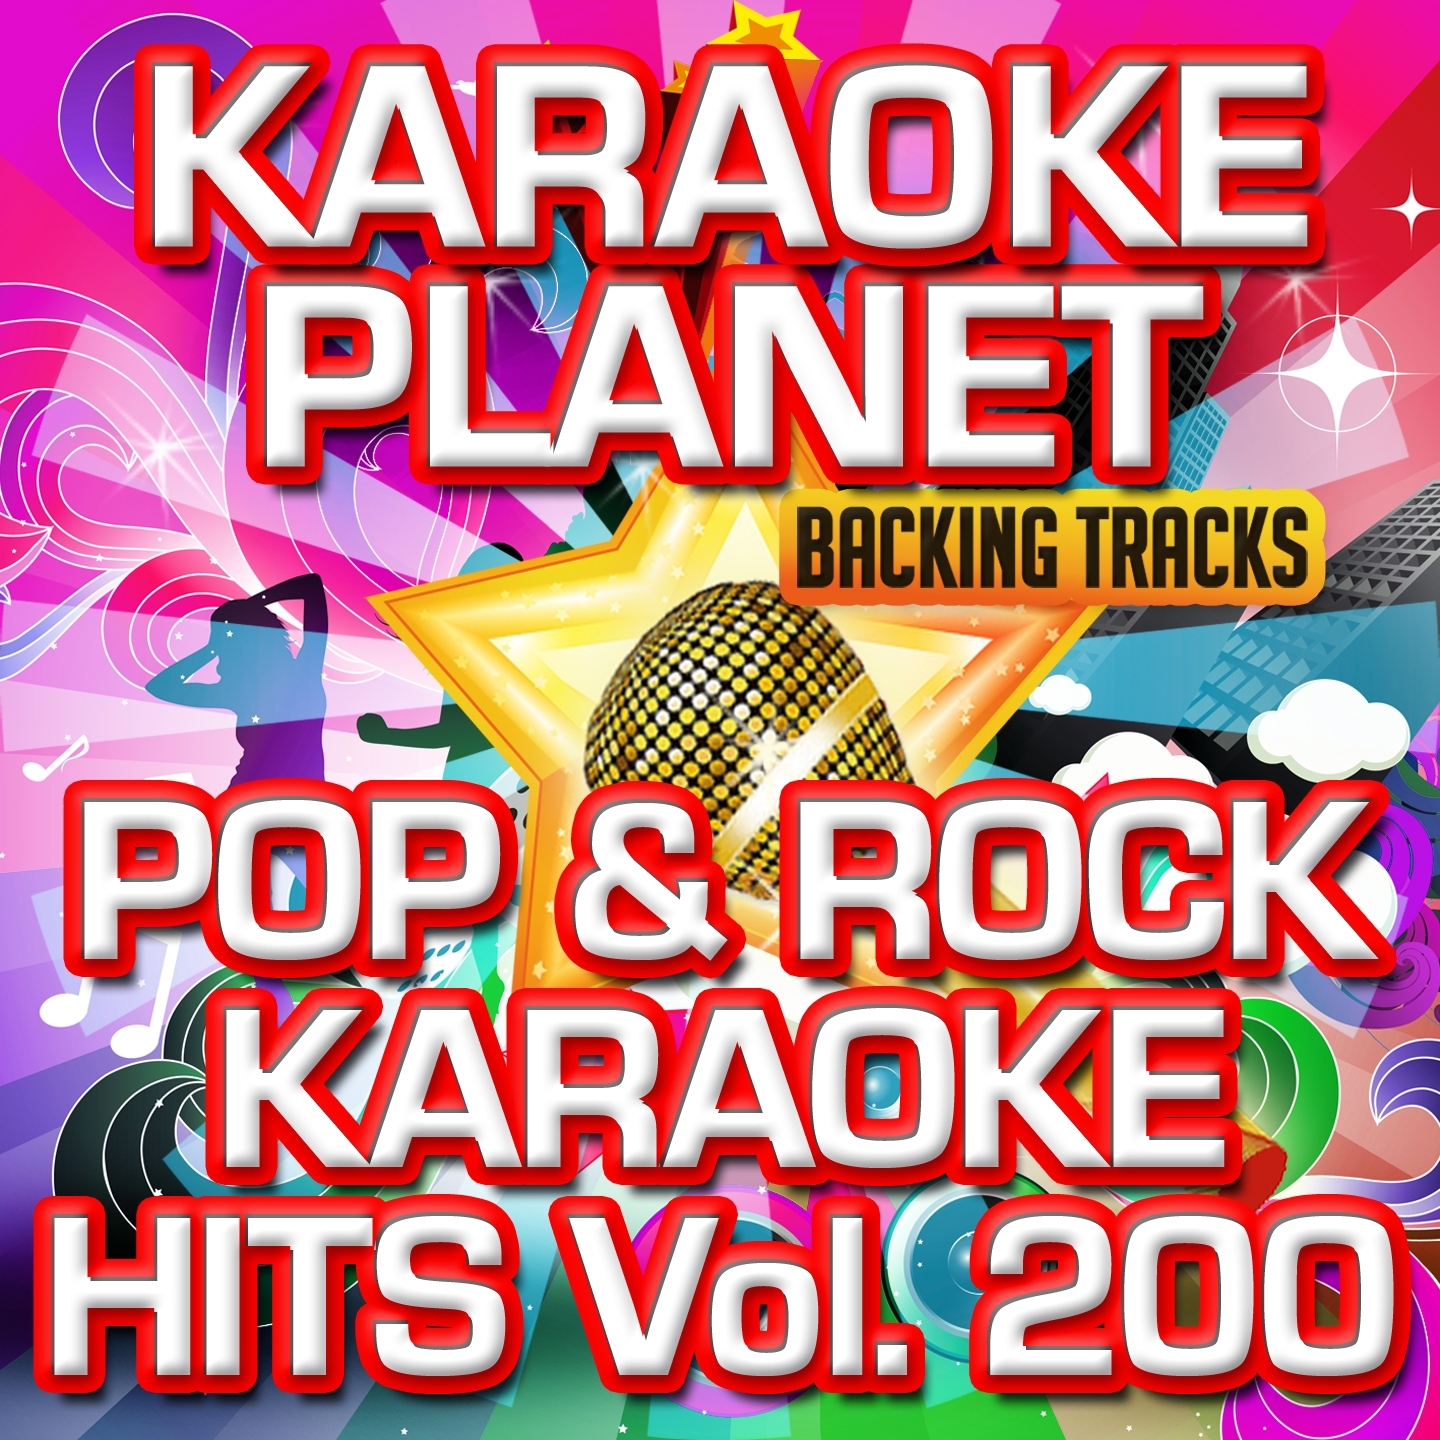 Pop & Rock Karaoke Hits, Vol. 200